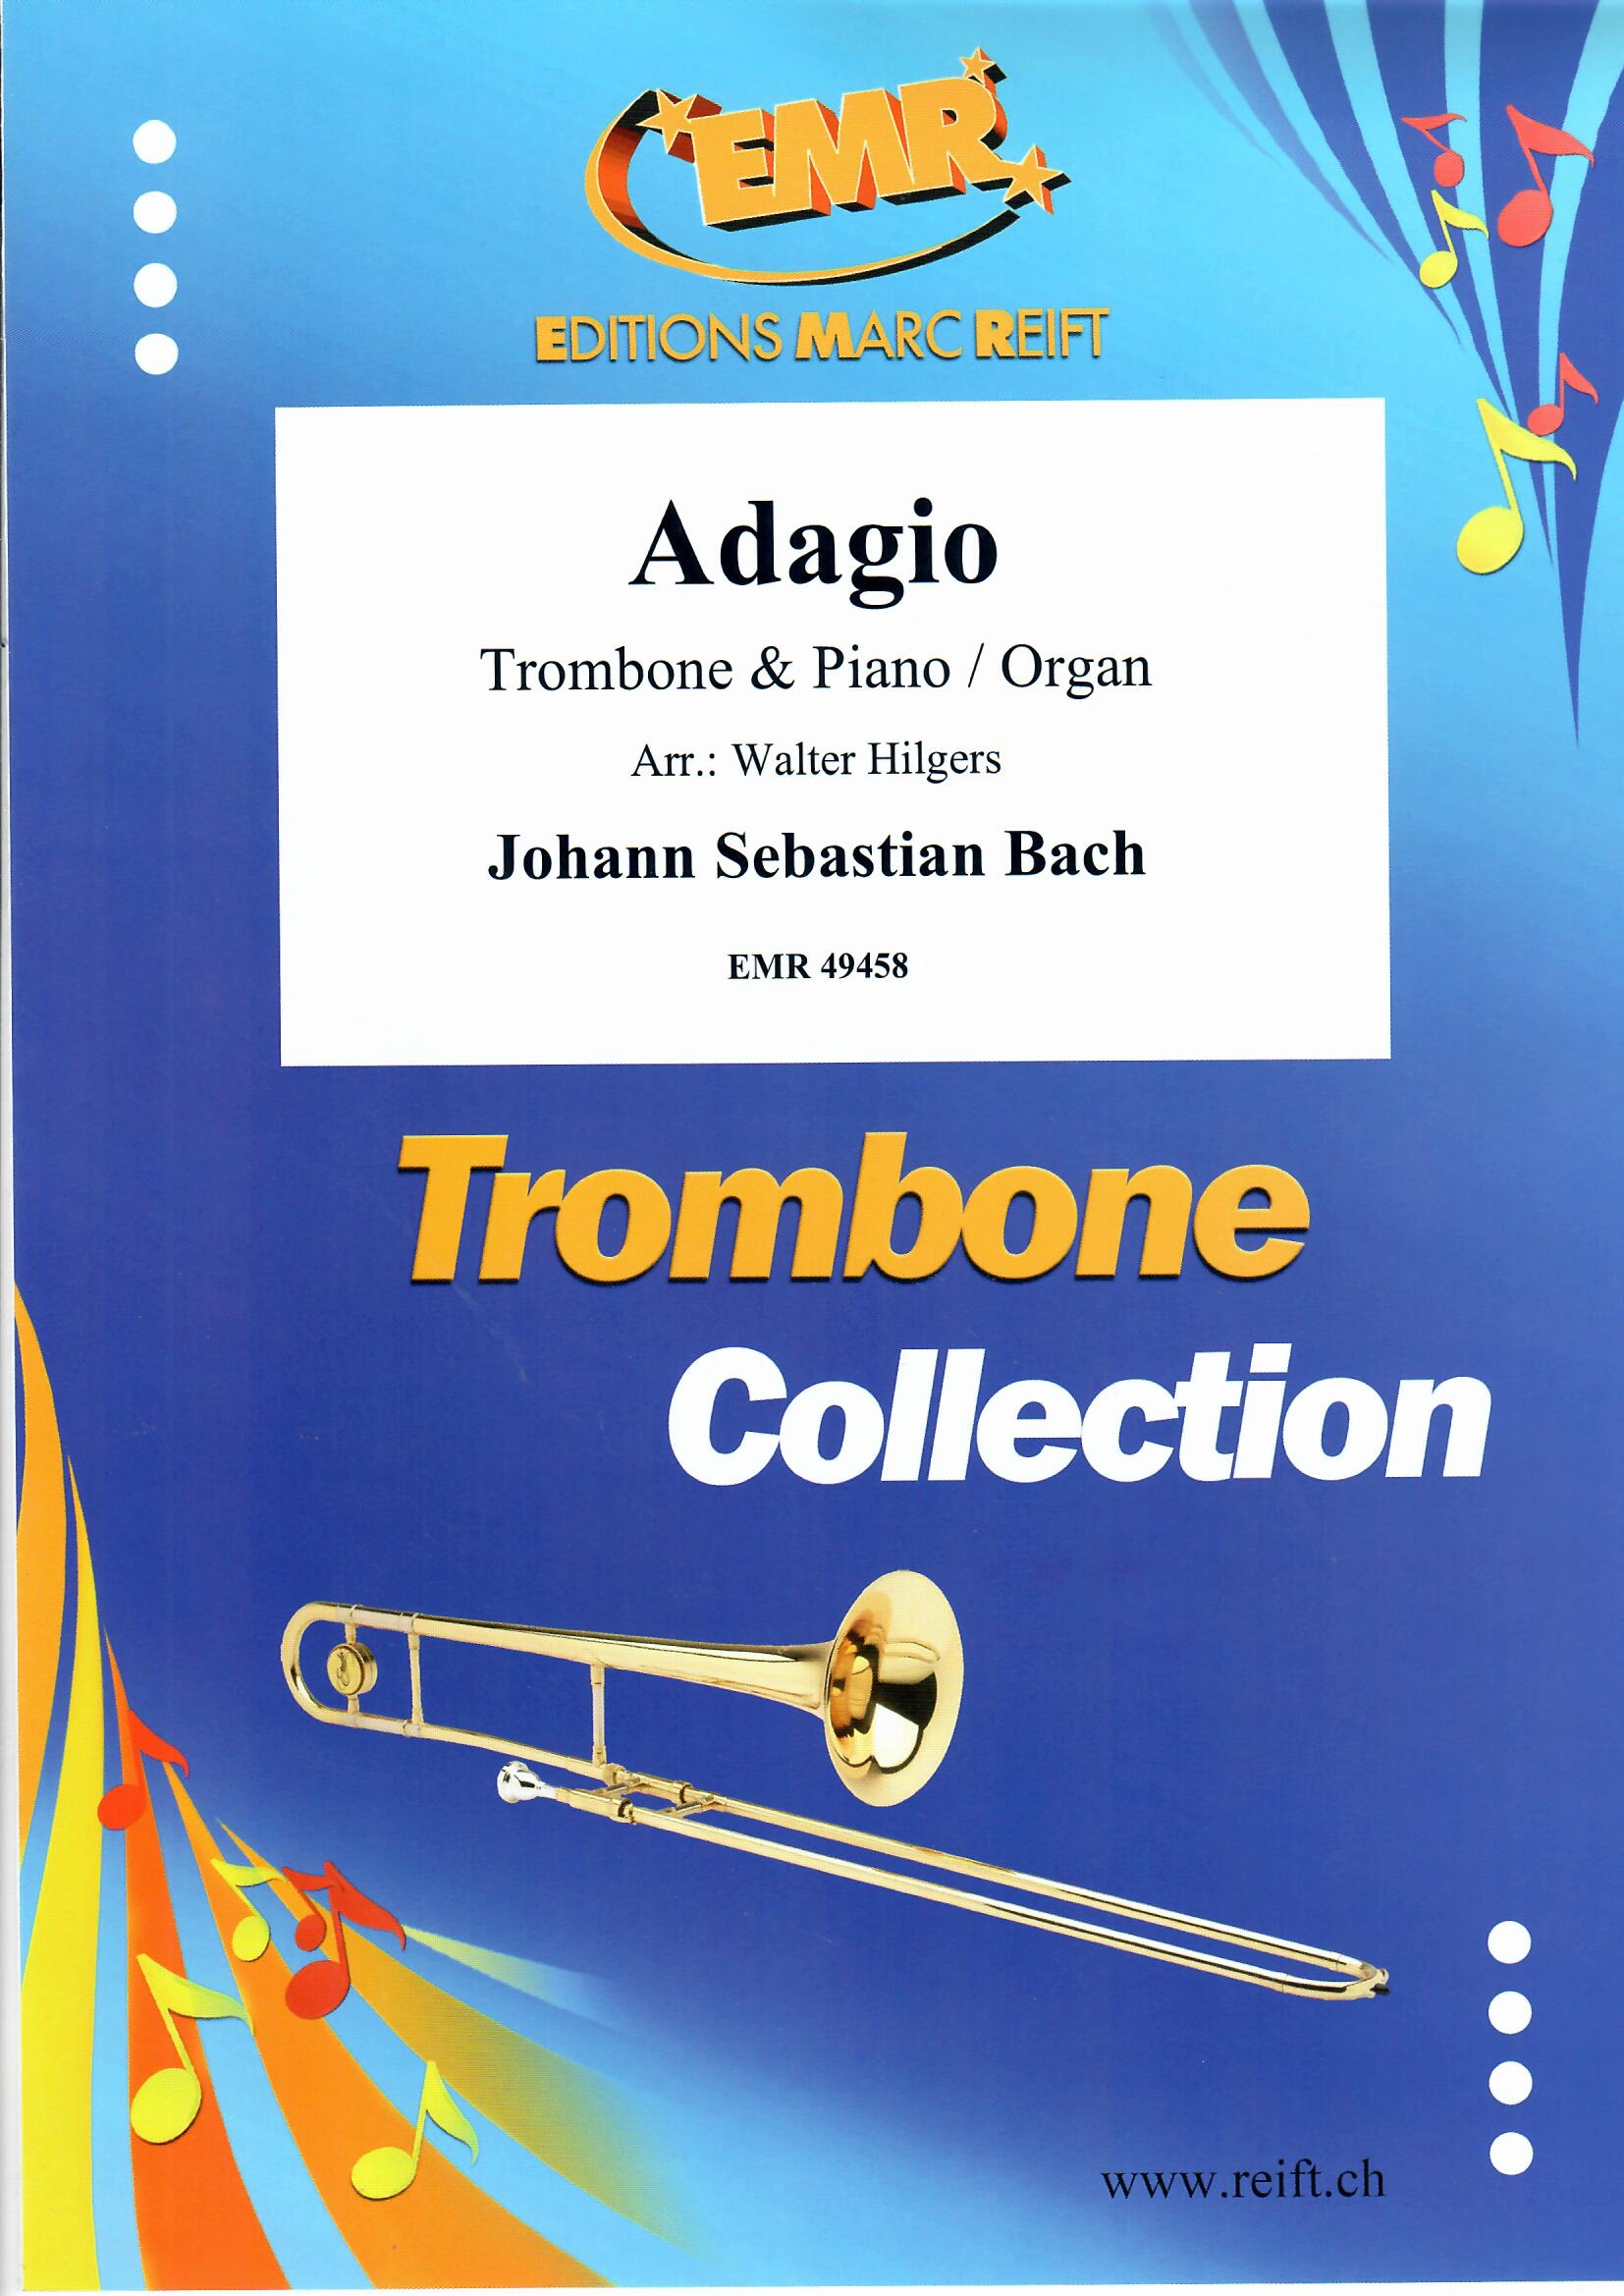 ADAGIO - Trombone & Organ